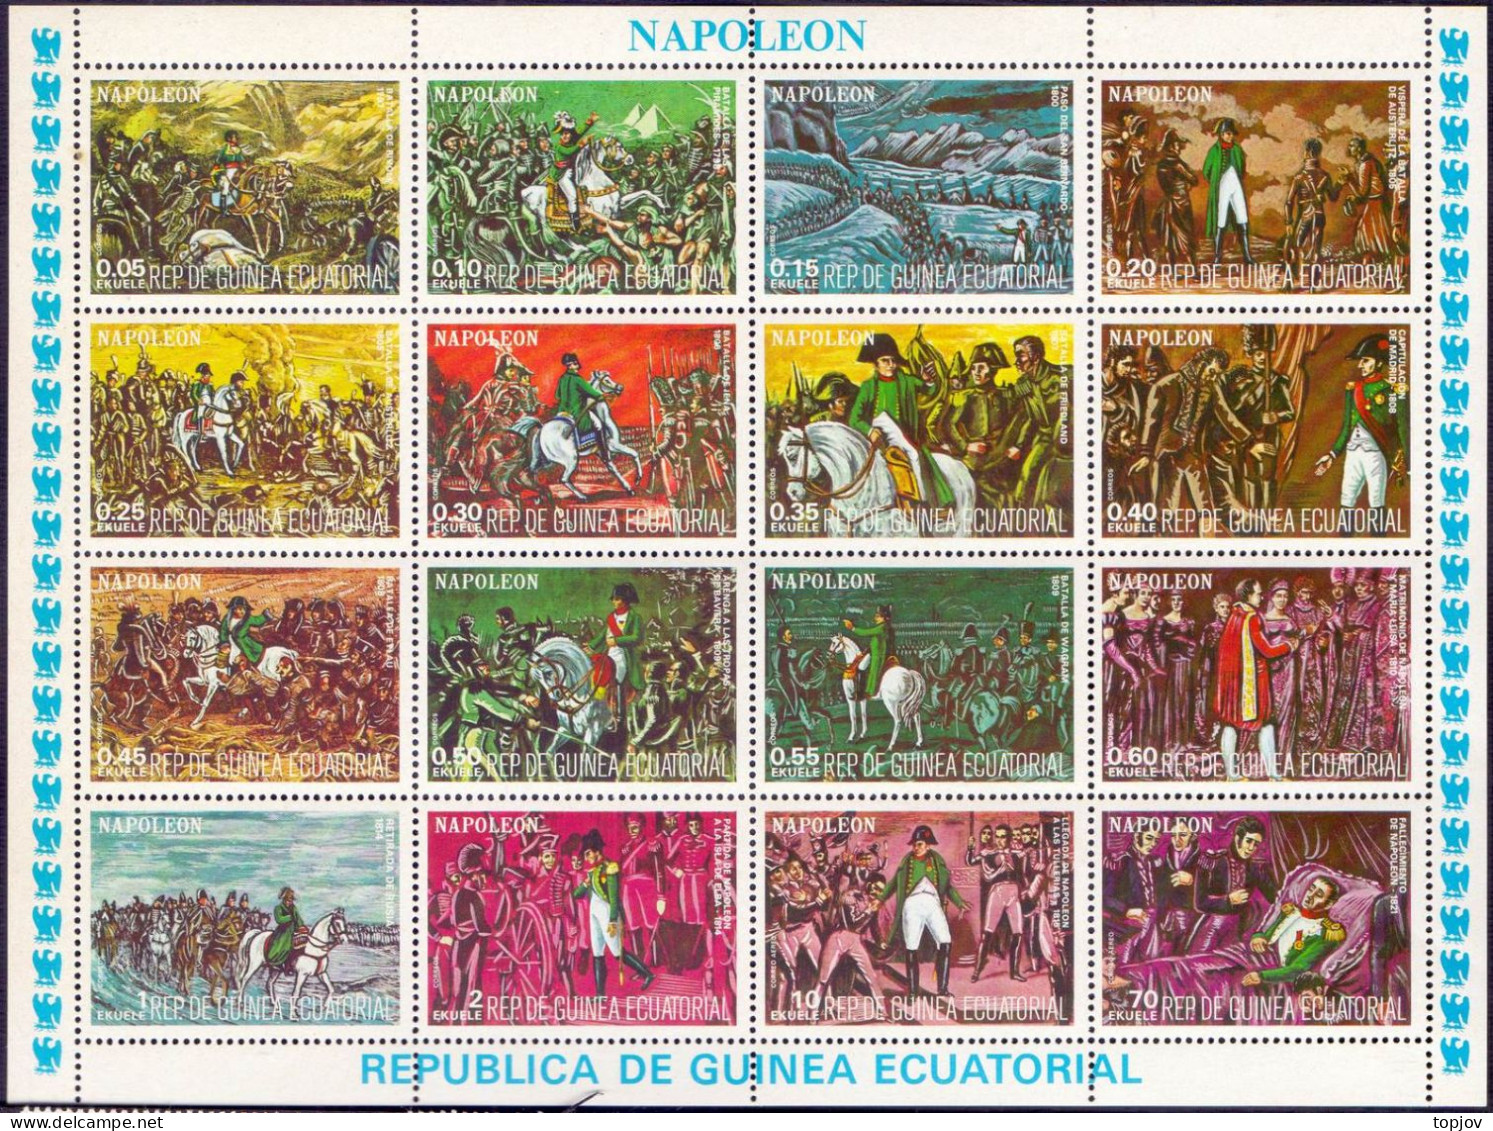 GUINEE ECUATORIAL - NAPOLEO BATLE  - **MNH - 1974 - Napoleón